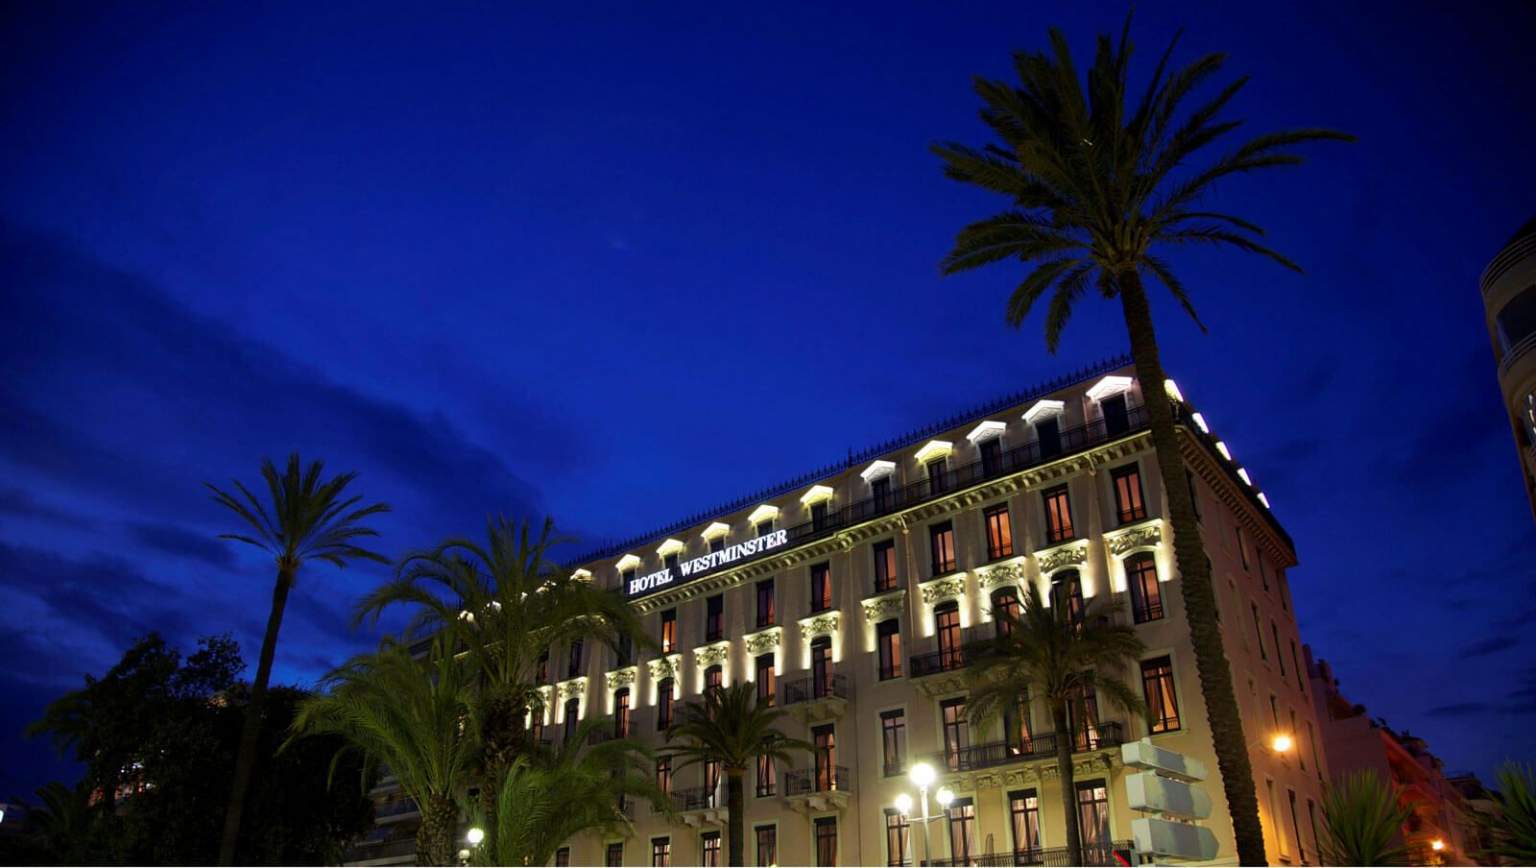 Façade de Nuit Westminster Hotel Spa Nice Promenade des Anglais